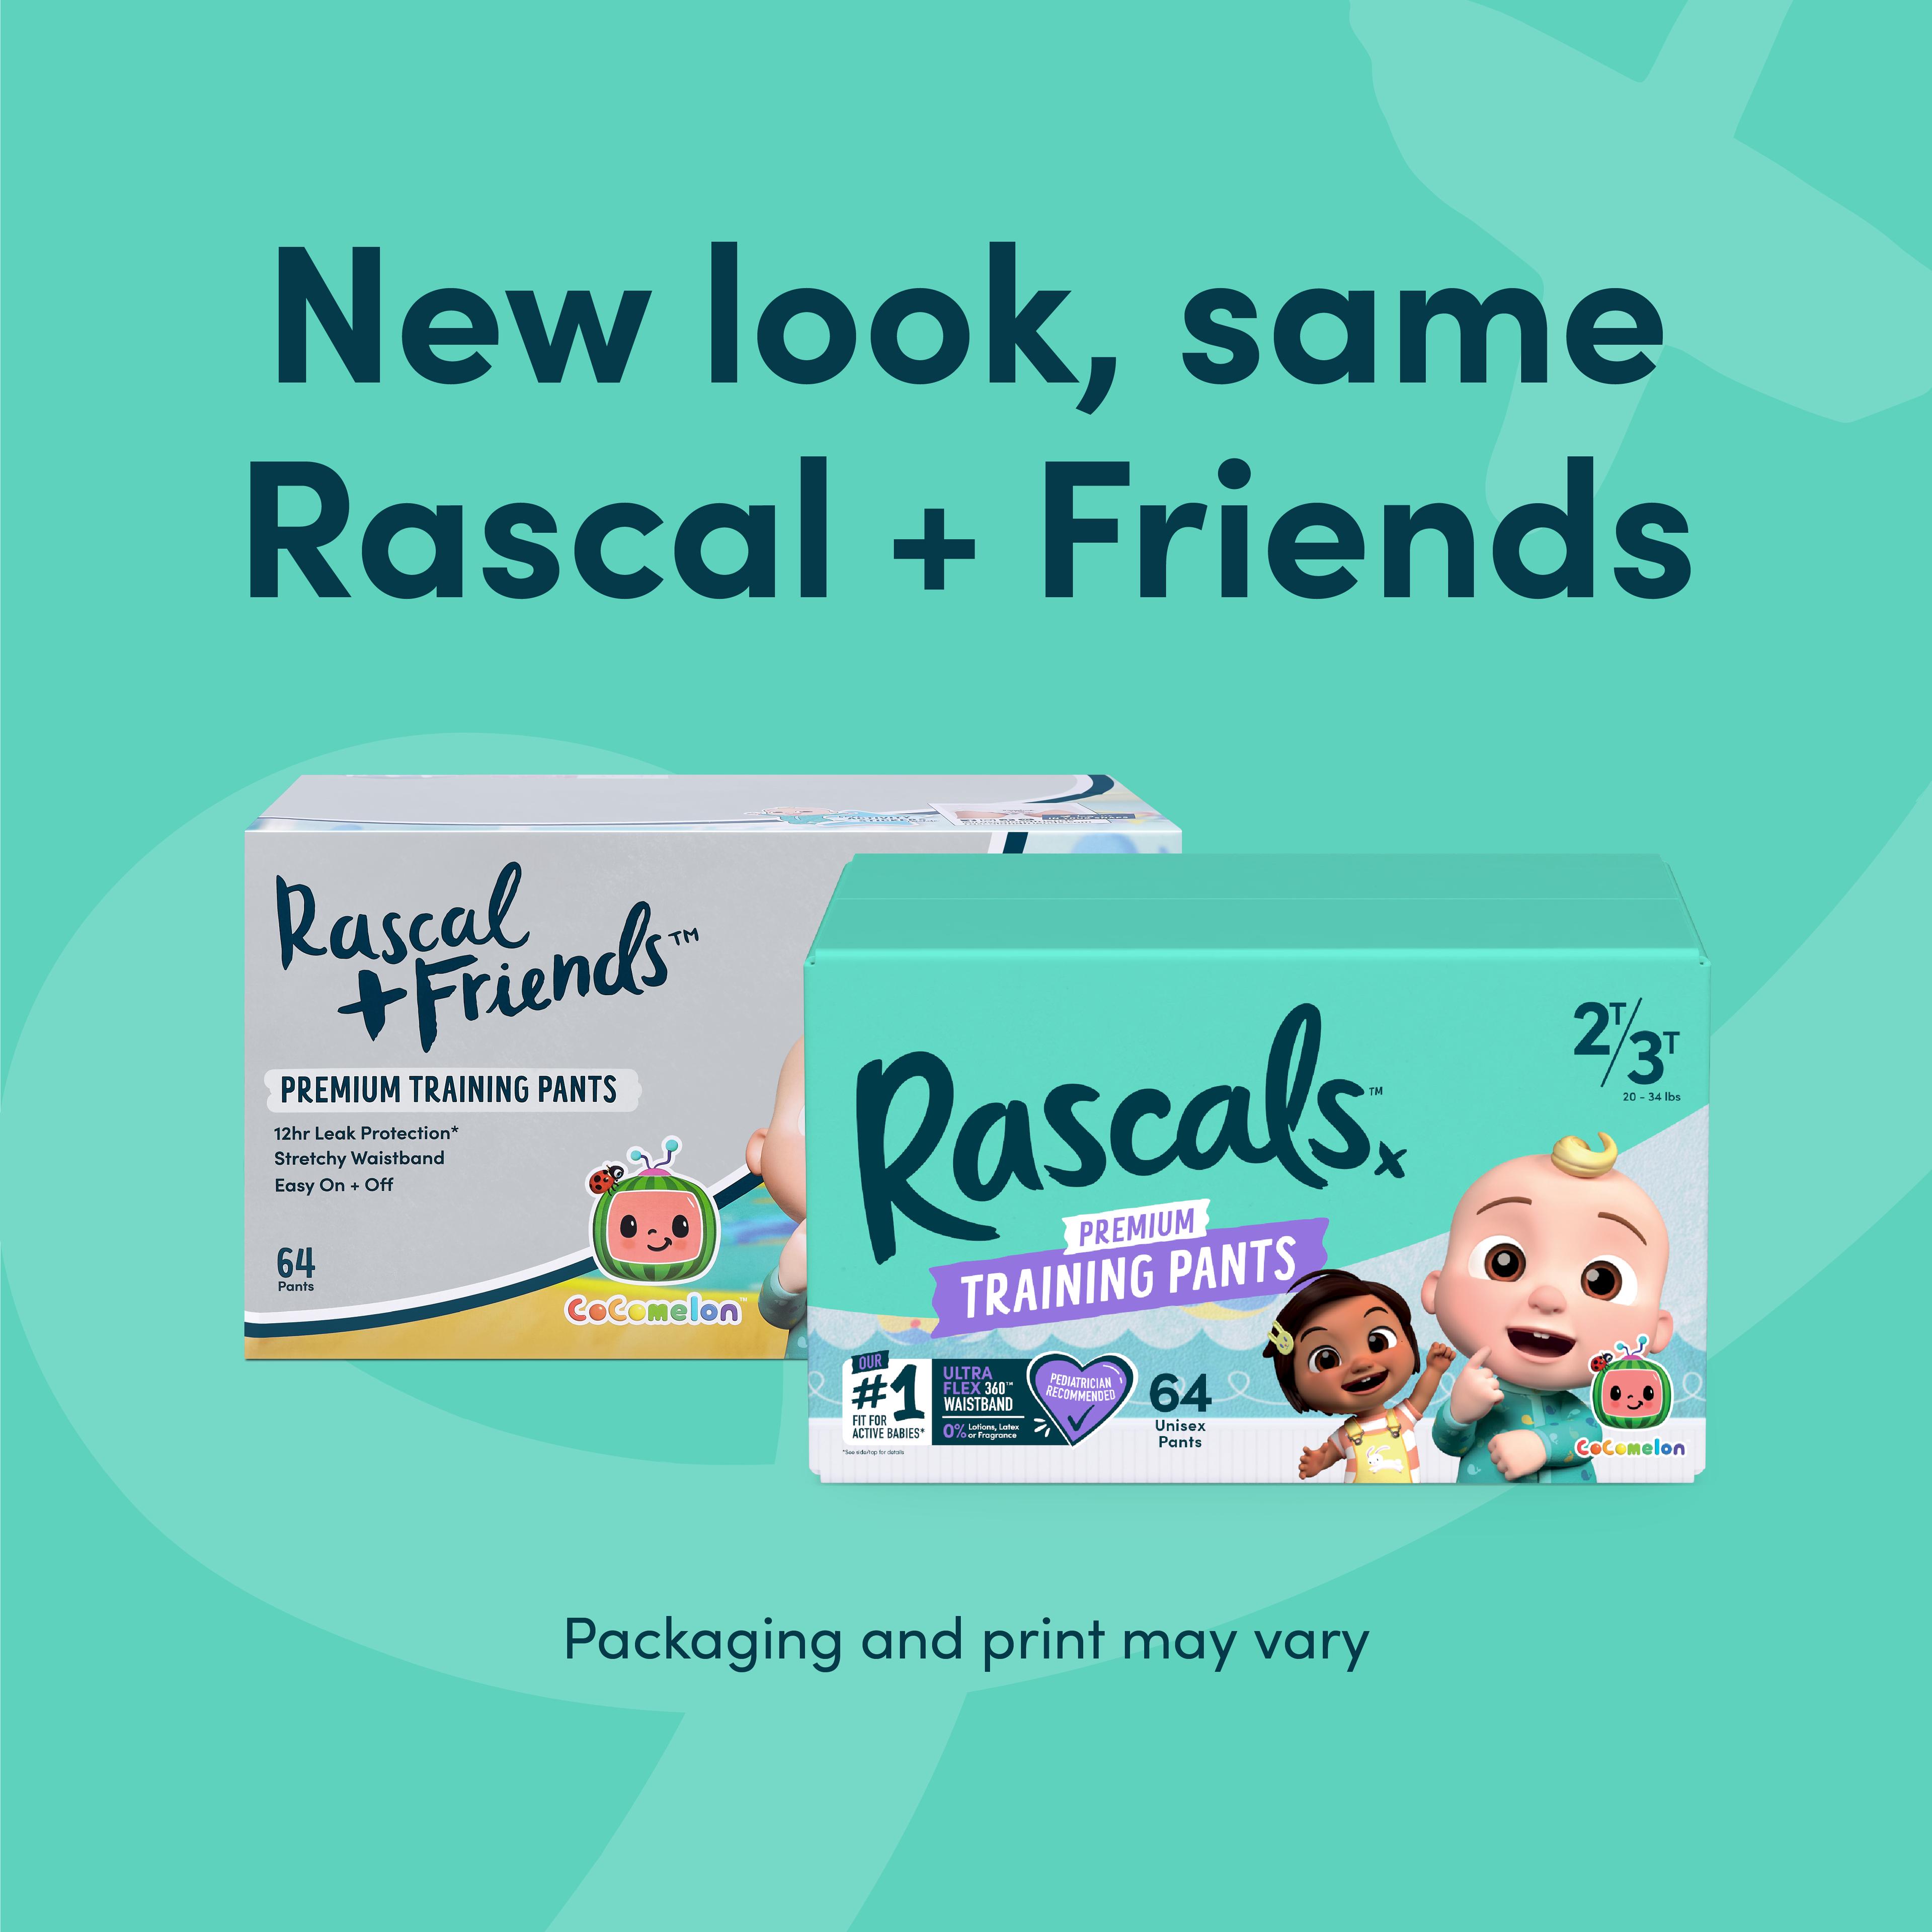 New look, same Rascal + Friends